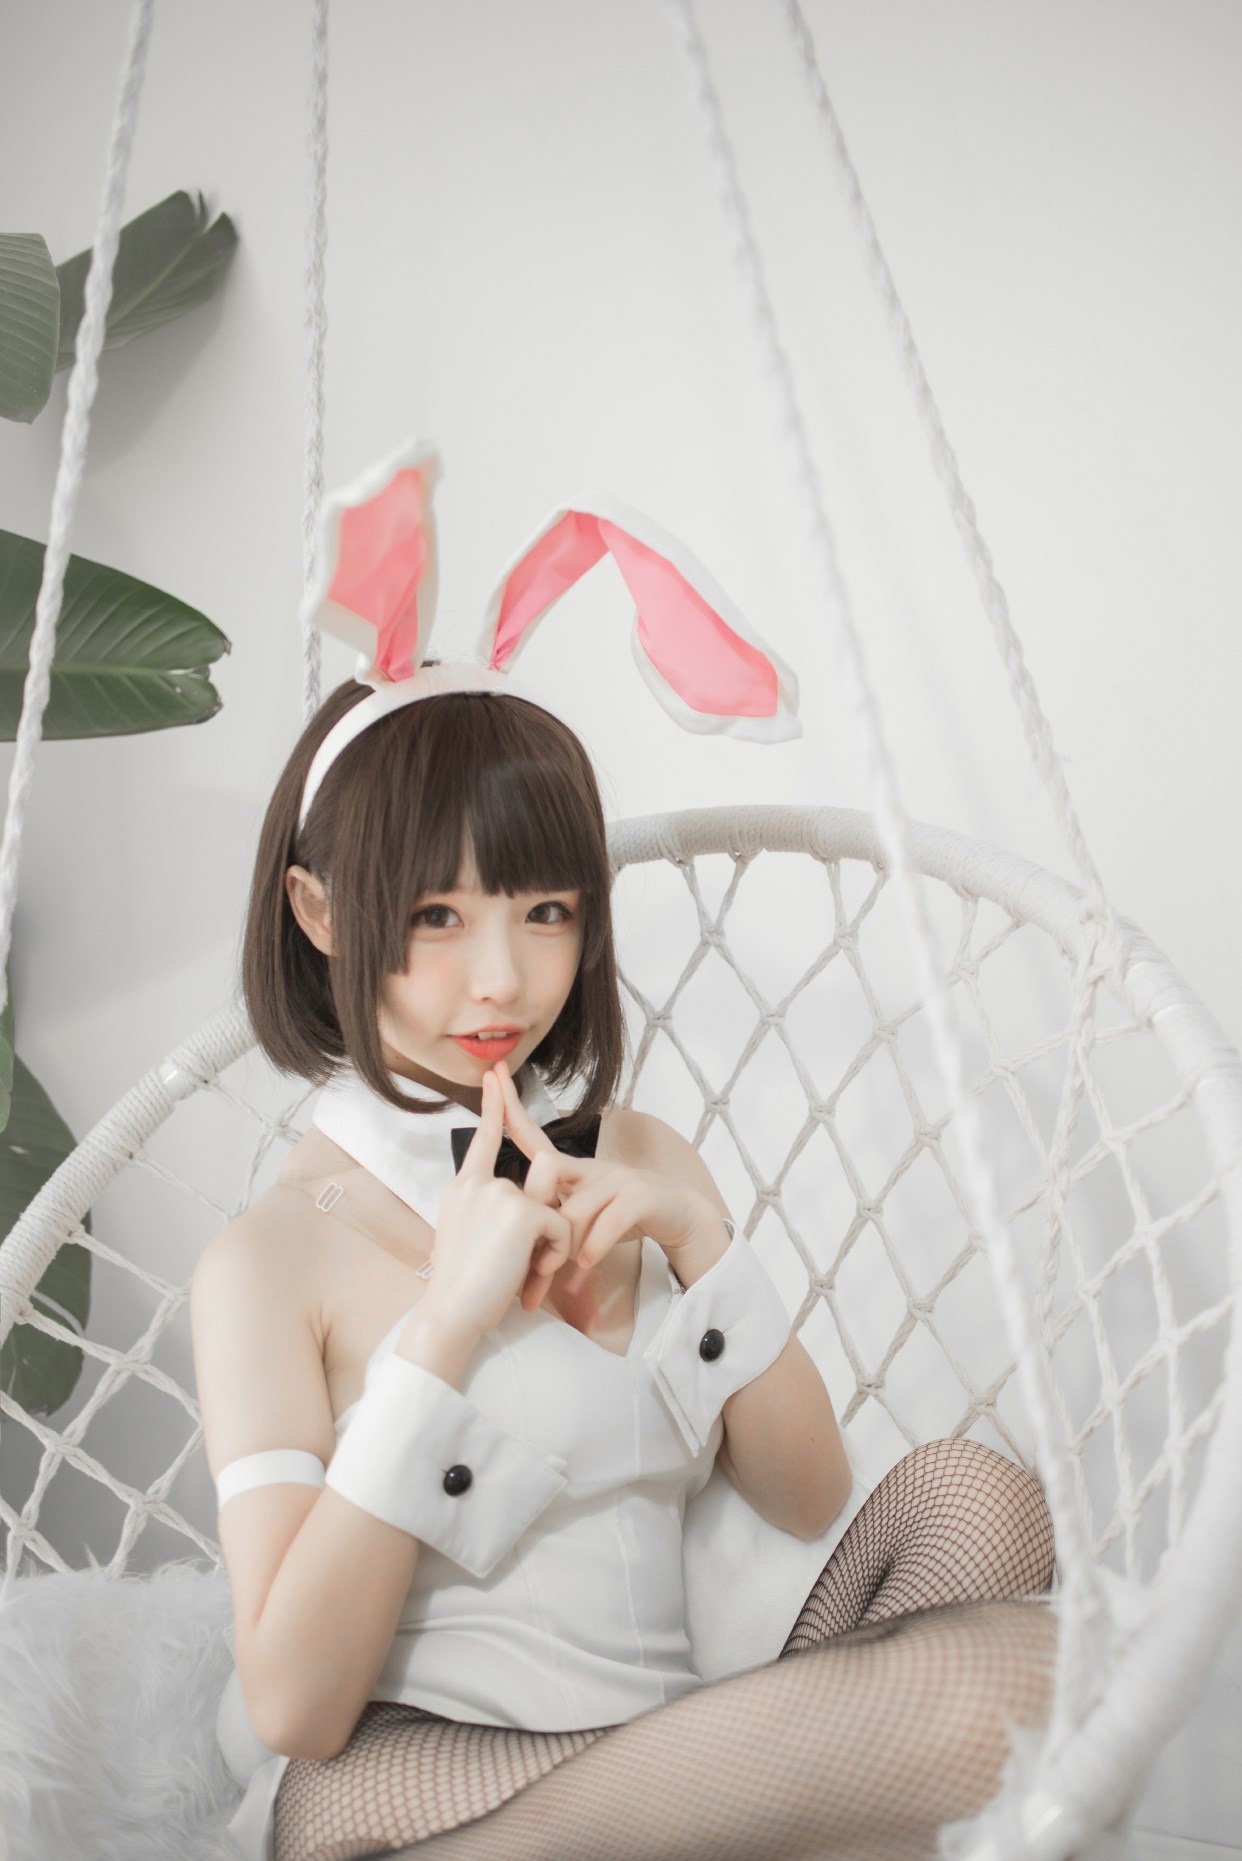 【兔玩映画】兔女郎vol.22-萝莉 兔玩映画 第18张